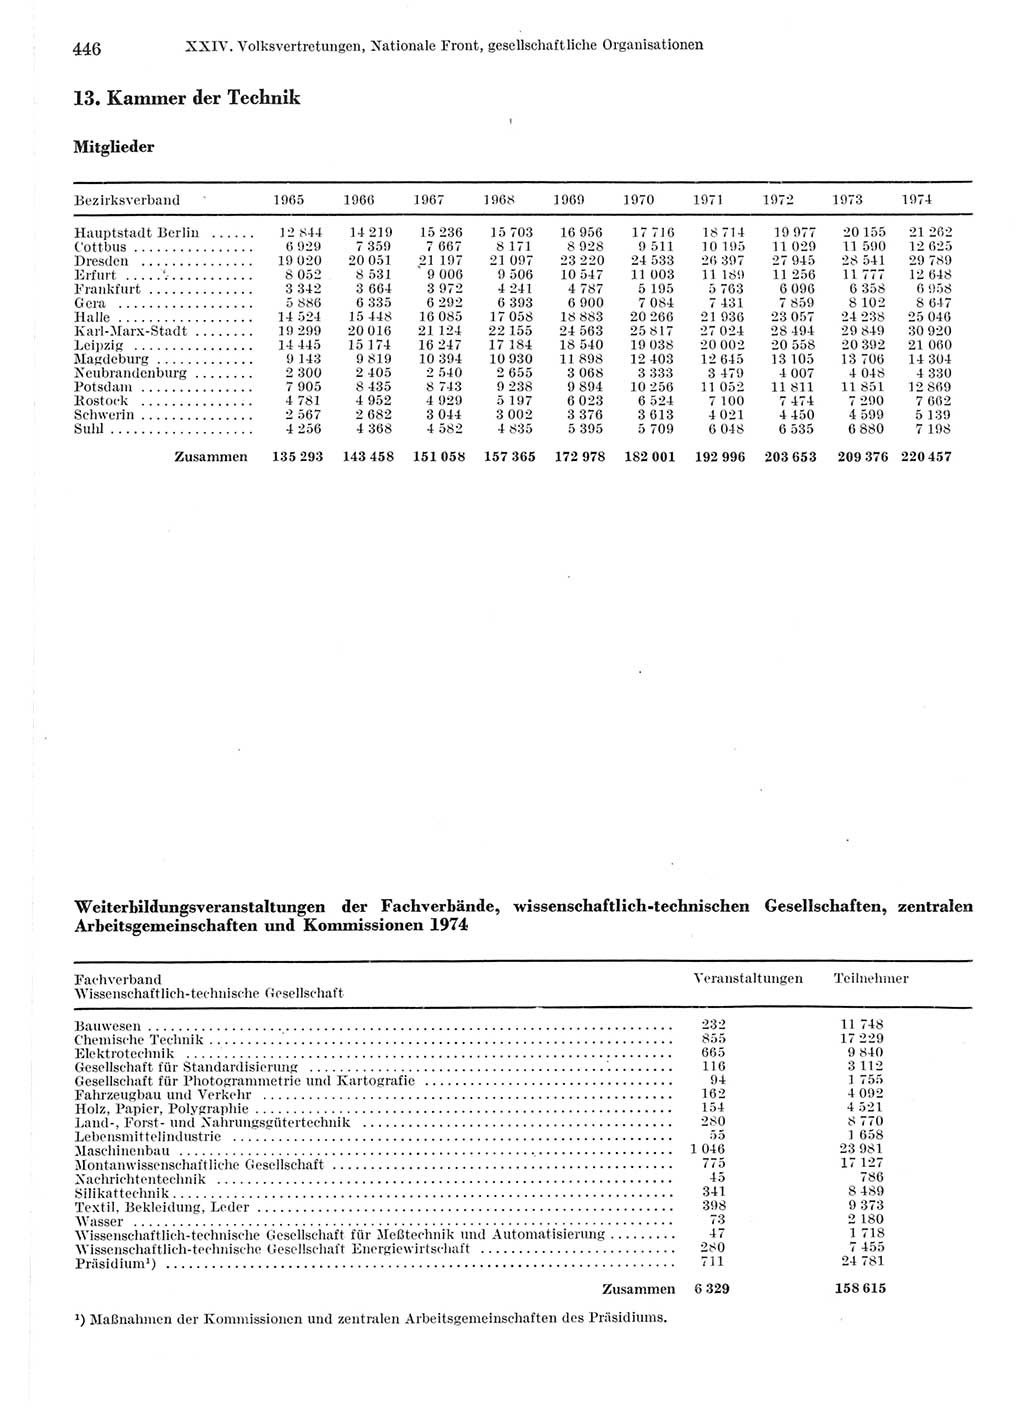 Statistisches Jahrbuch der Deutschen Demokratischen Republik (DDR) 1975, Seite 446 (Stat. Jb. DDR 1975, S. 446)